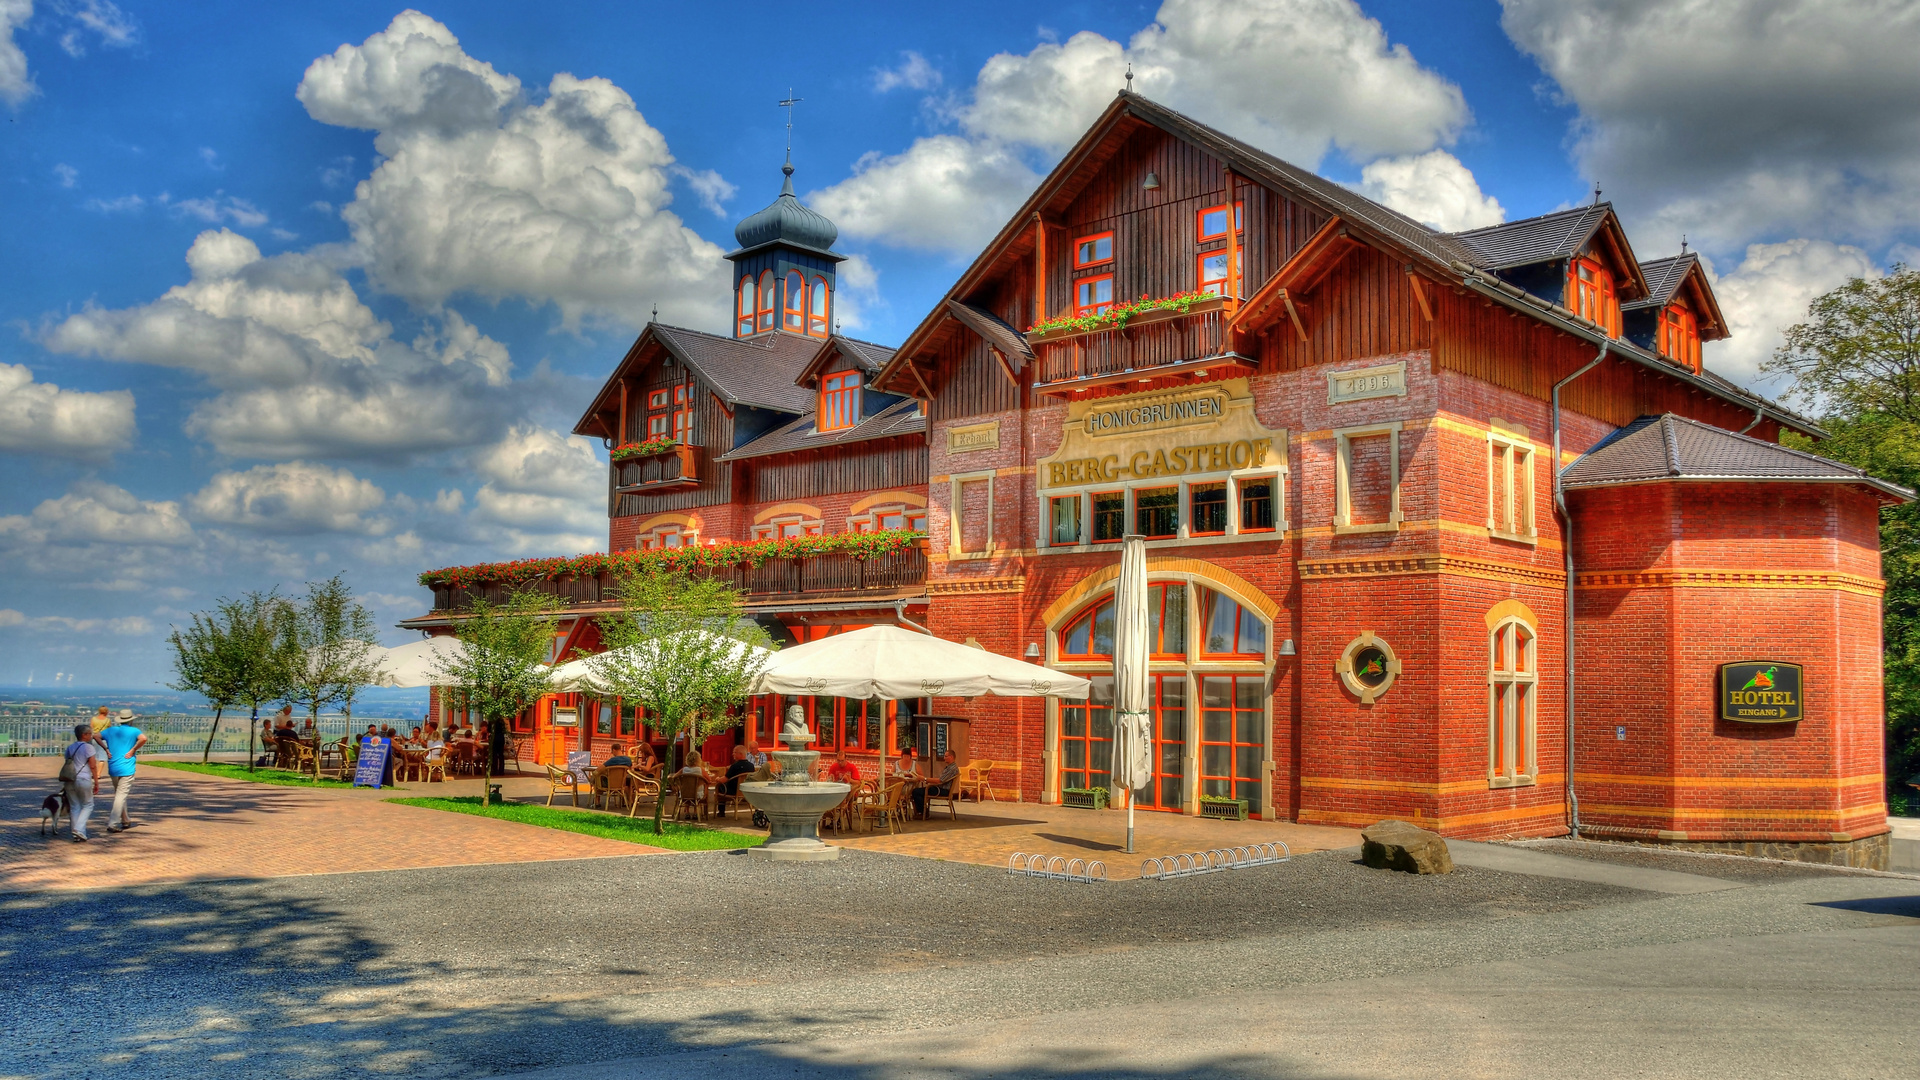 Das Restaurant und Hotel "Honigbrunnen" auf dem Löbauer Berg